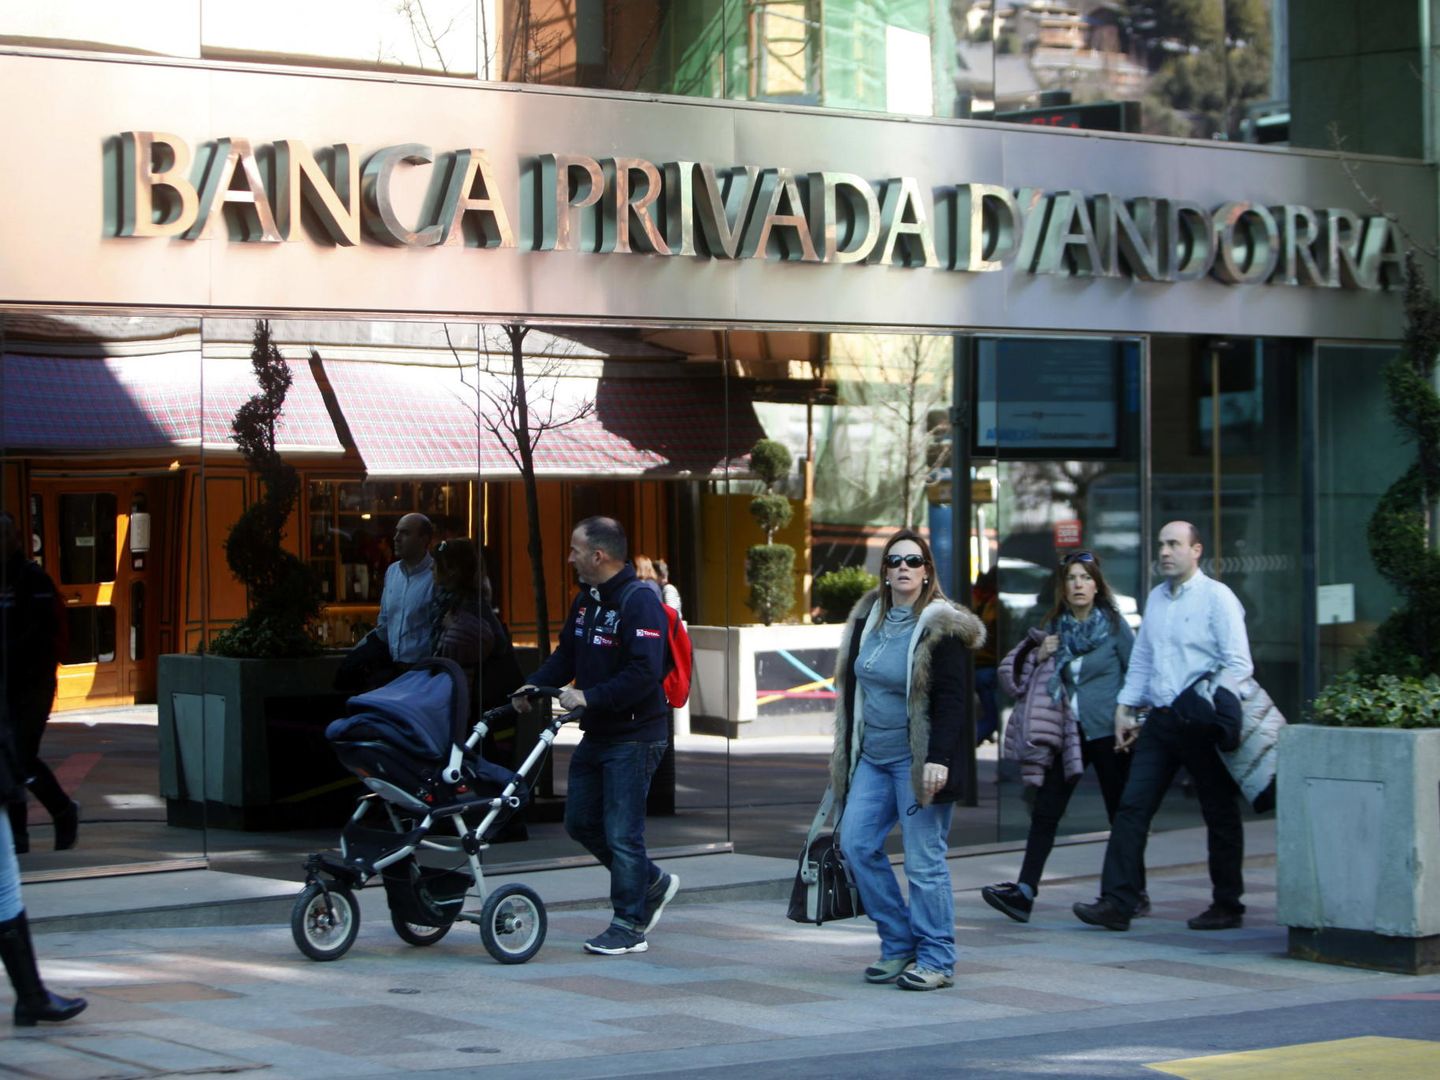 Sede central de Banca Privada Andorrana, una de las cinco entidades bancarias del Principado. (EFE)